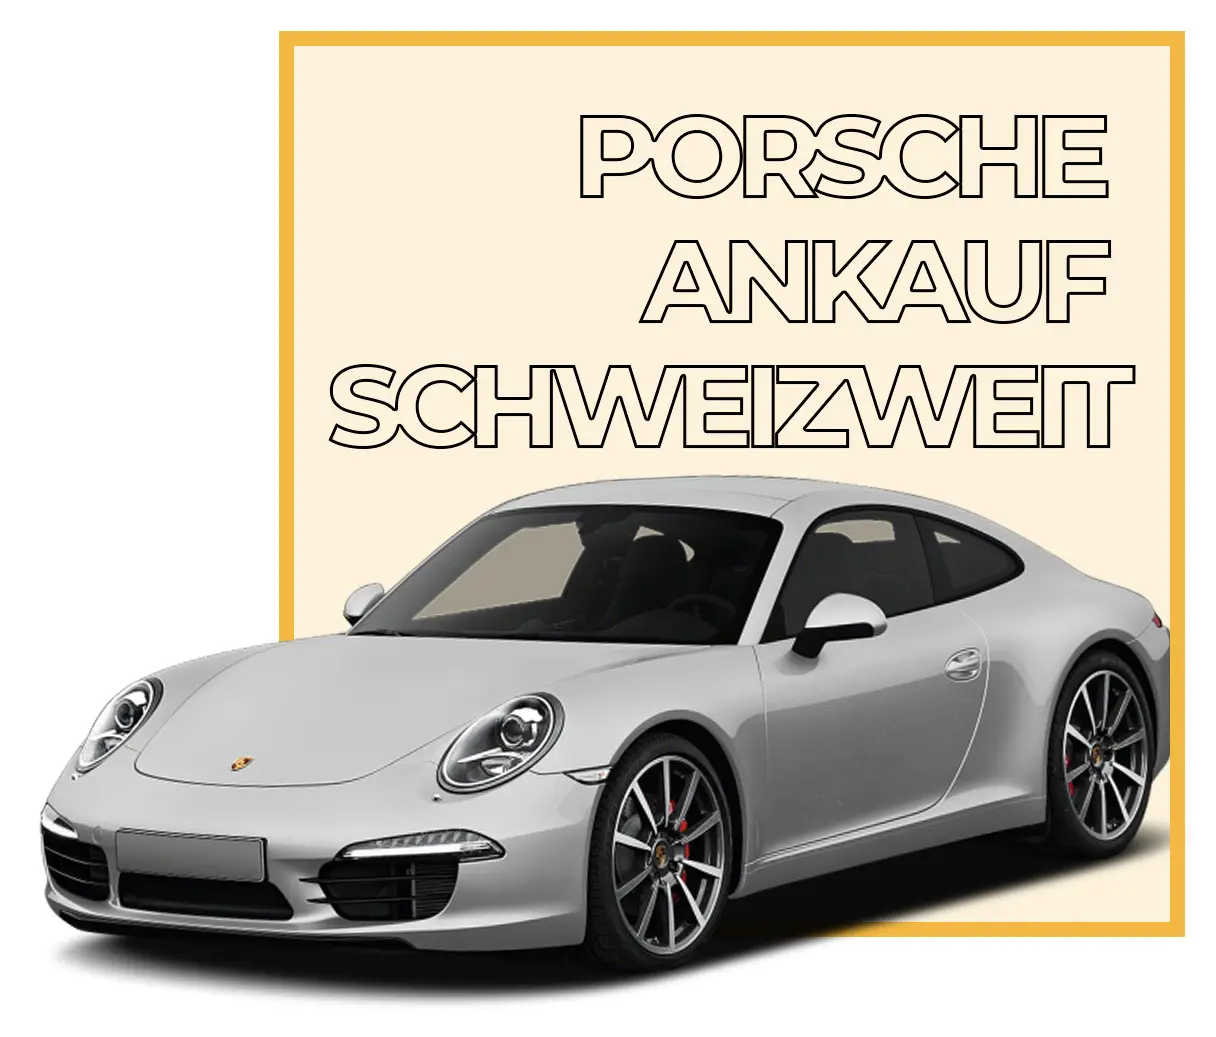 Porsche Ankauf schweizweit